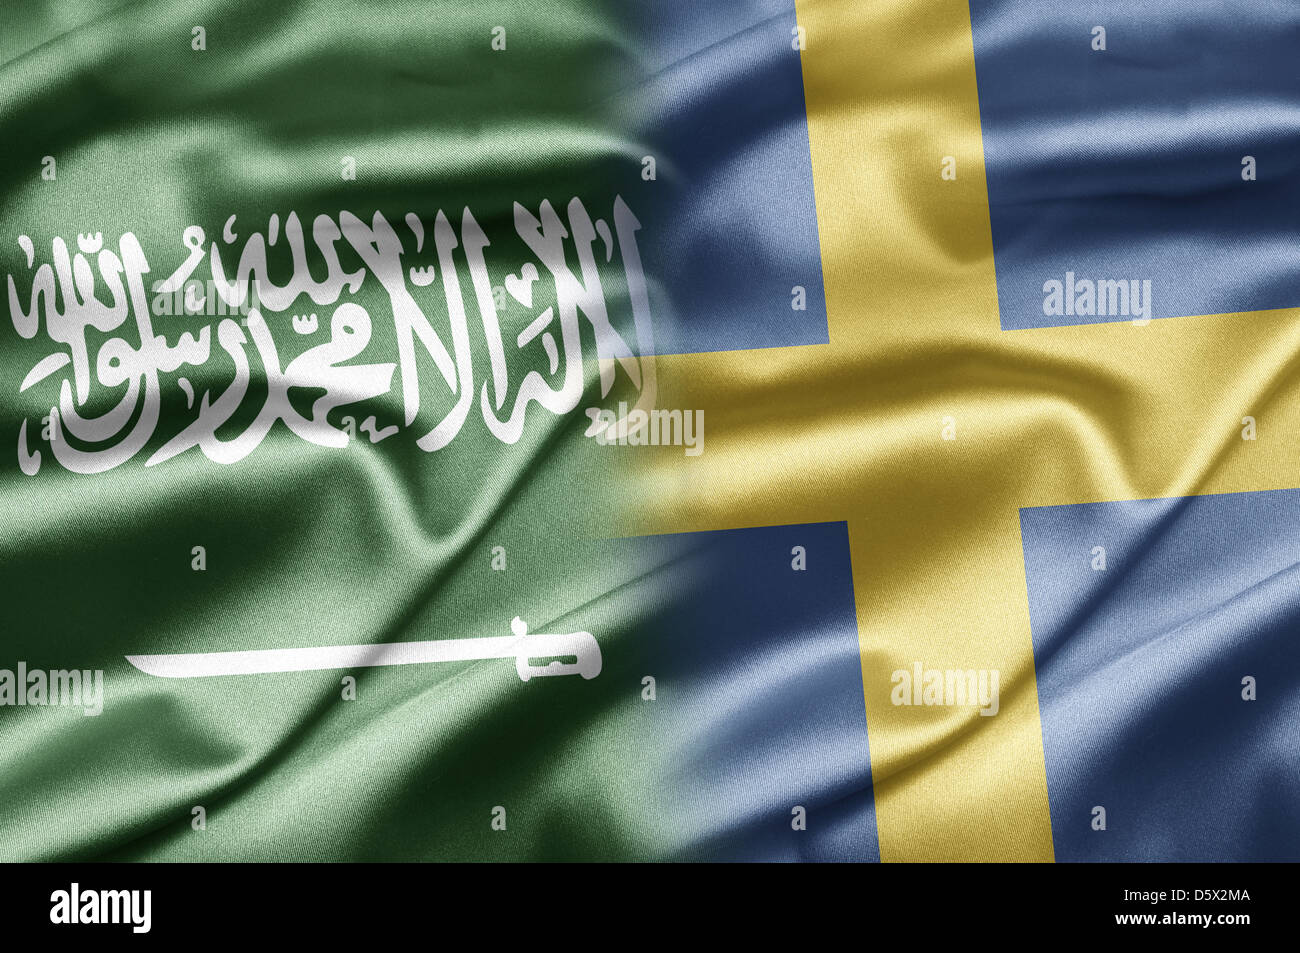 Saudi Arabia and Sweden Stock Photo